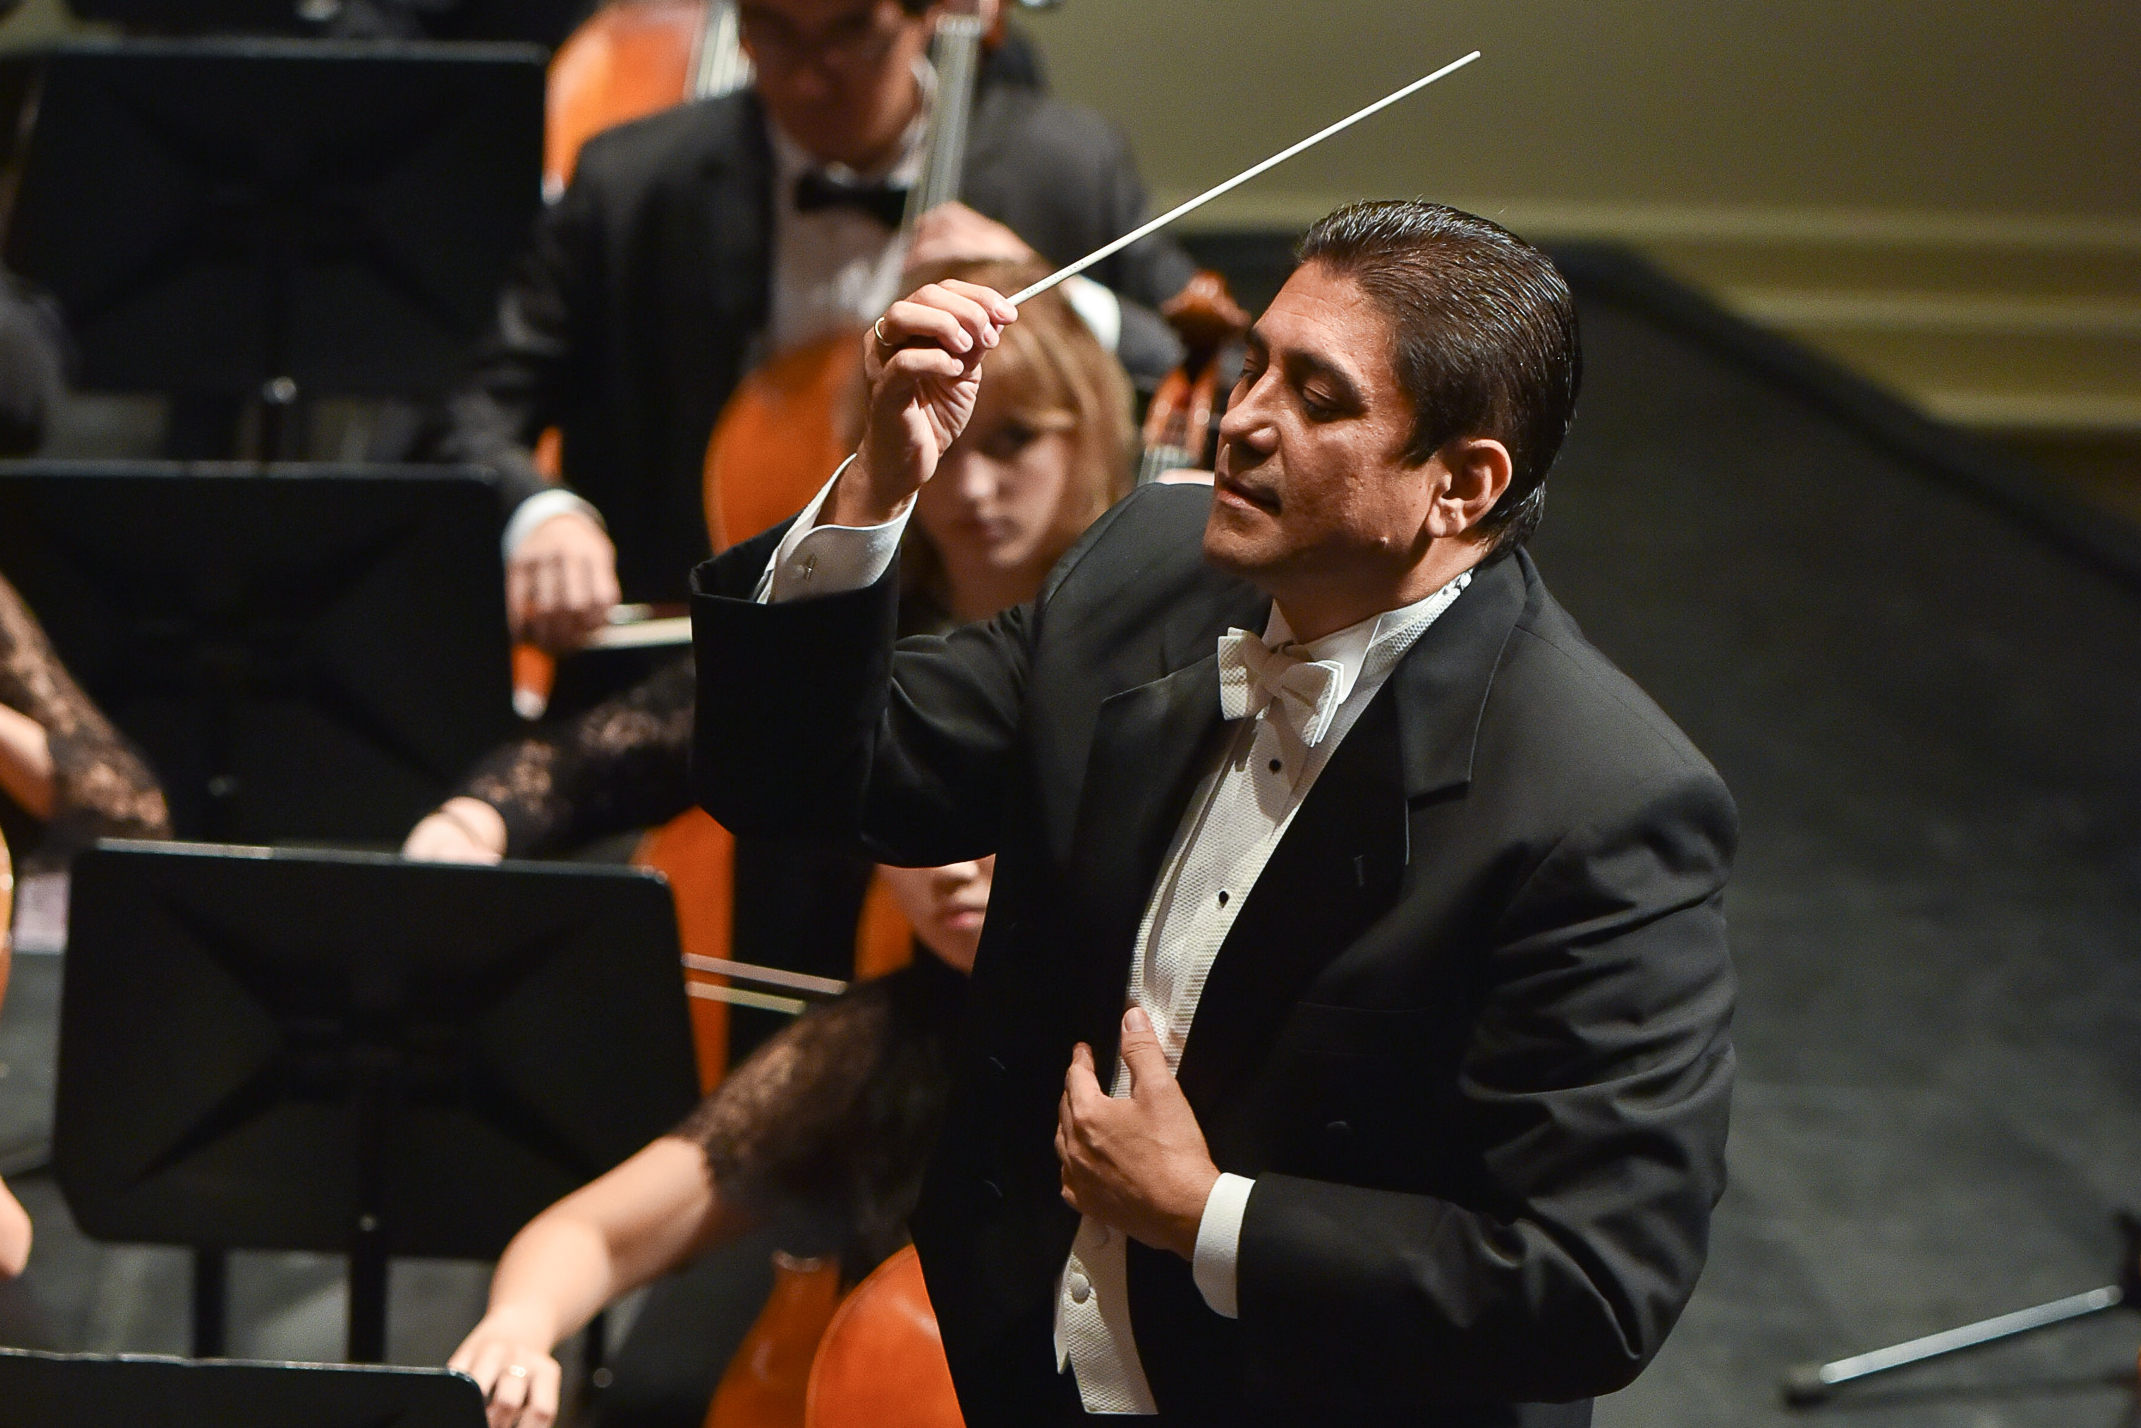 Germán Gutiérrez conducting a symphony orchestra